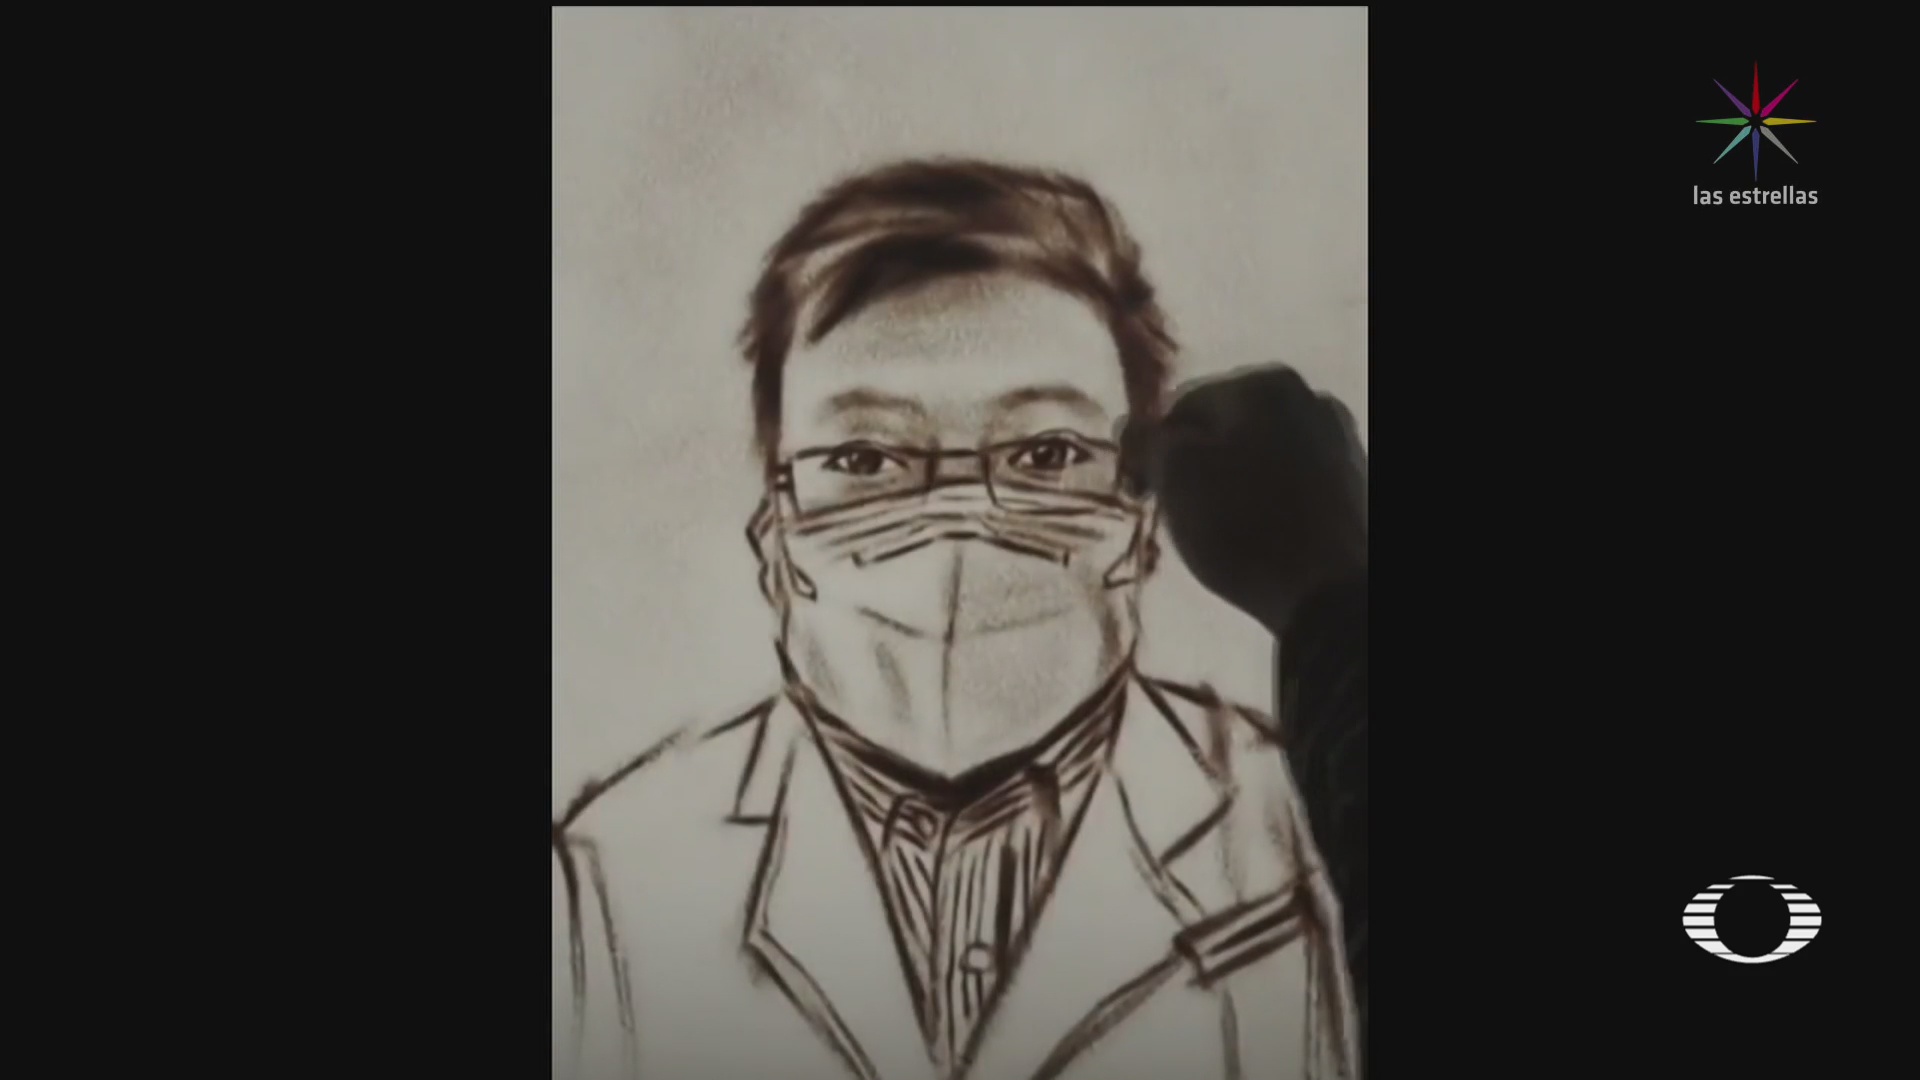 FOTO: 7 febrero 2020, en china despiden como heroe a medico que alerto sobre el nuevo coronavirus